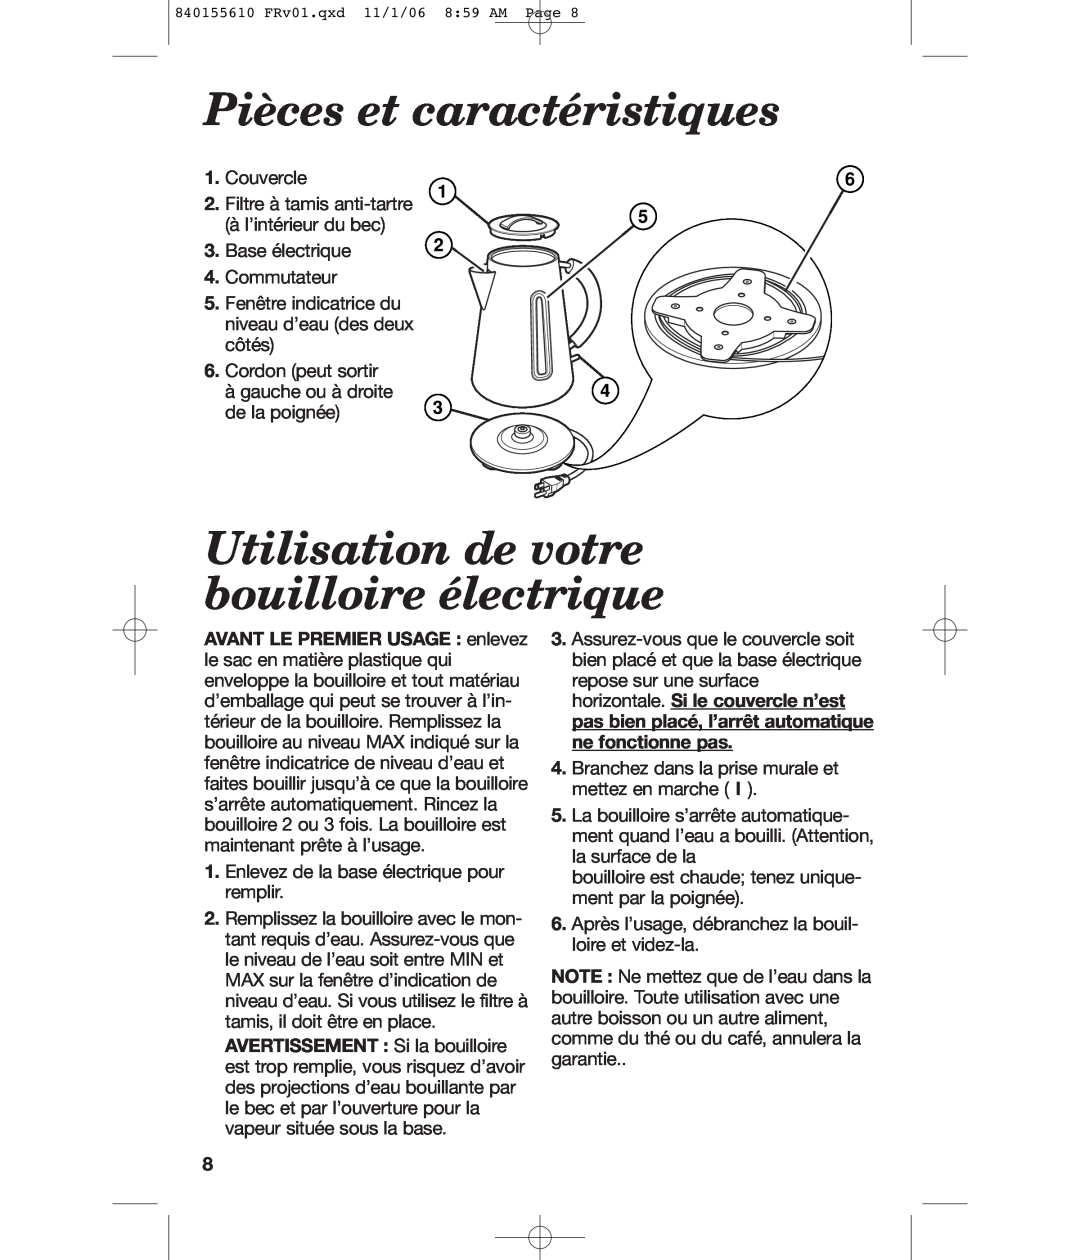 Hamilton Beach 840155610 manual Pièces et caractéristiques, Utilisation de votre bouilloire électrique 